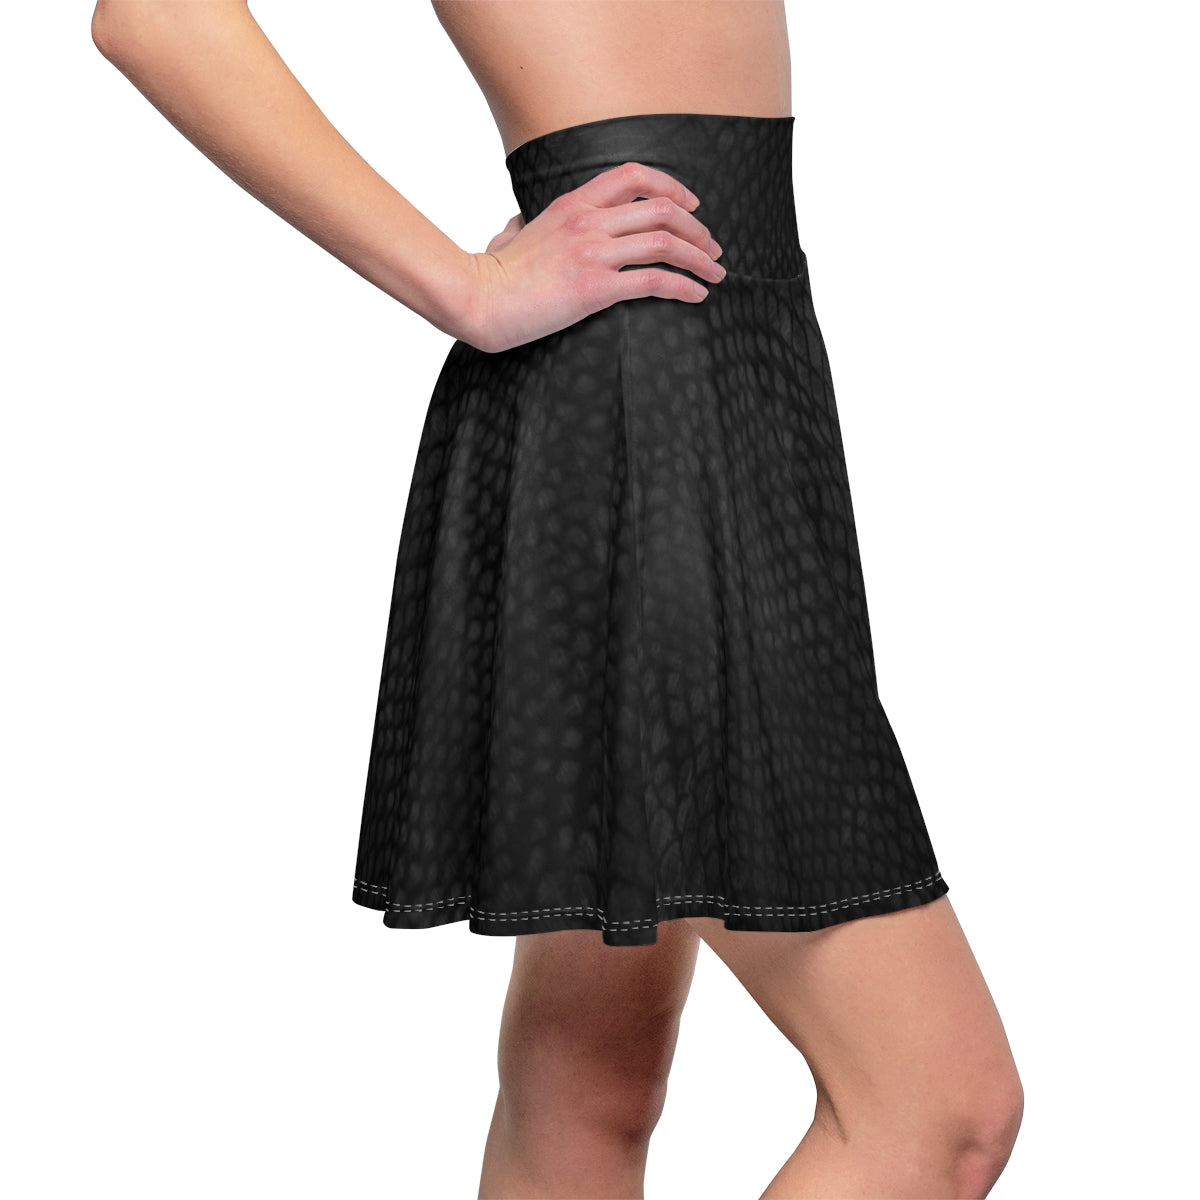 Women's Black Skater Skirt, Circle Hight Waisted Skirt, Gothic A Line Full Skirt,